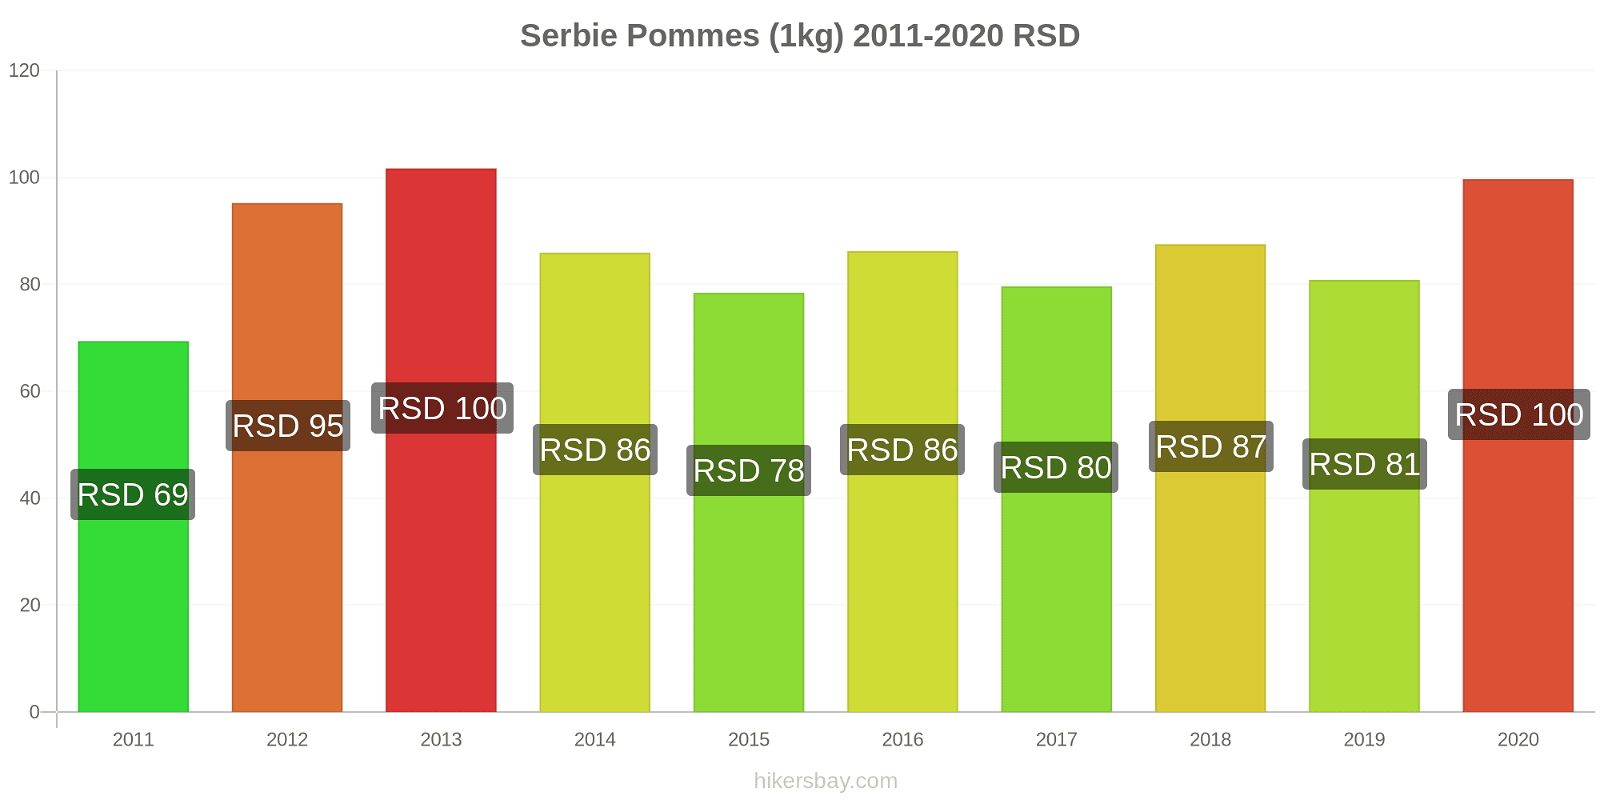 Serbie changements de prix Pommes (1kg) hikersbay.com